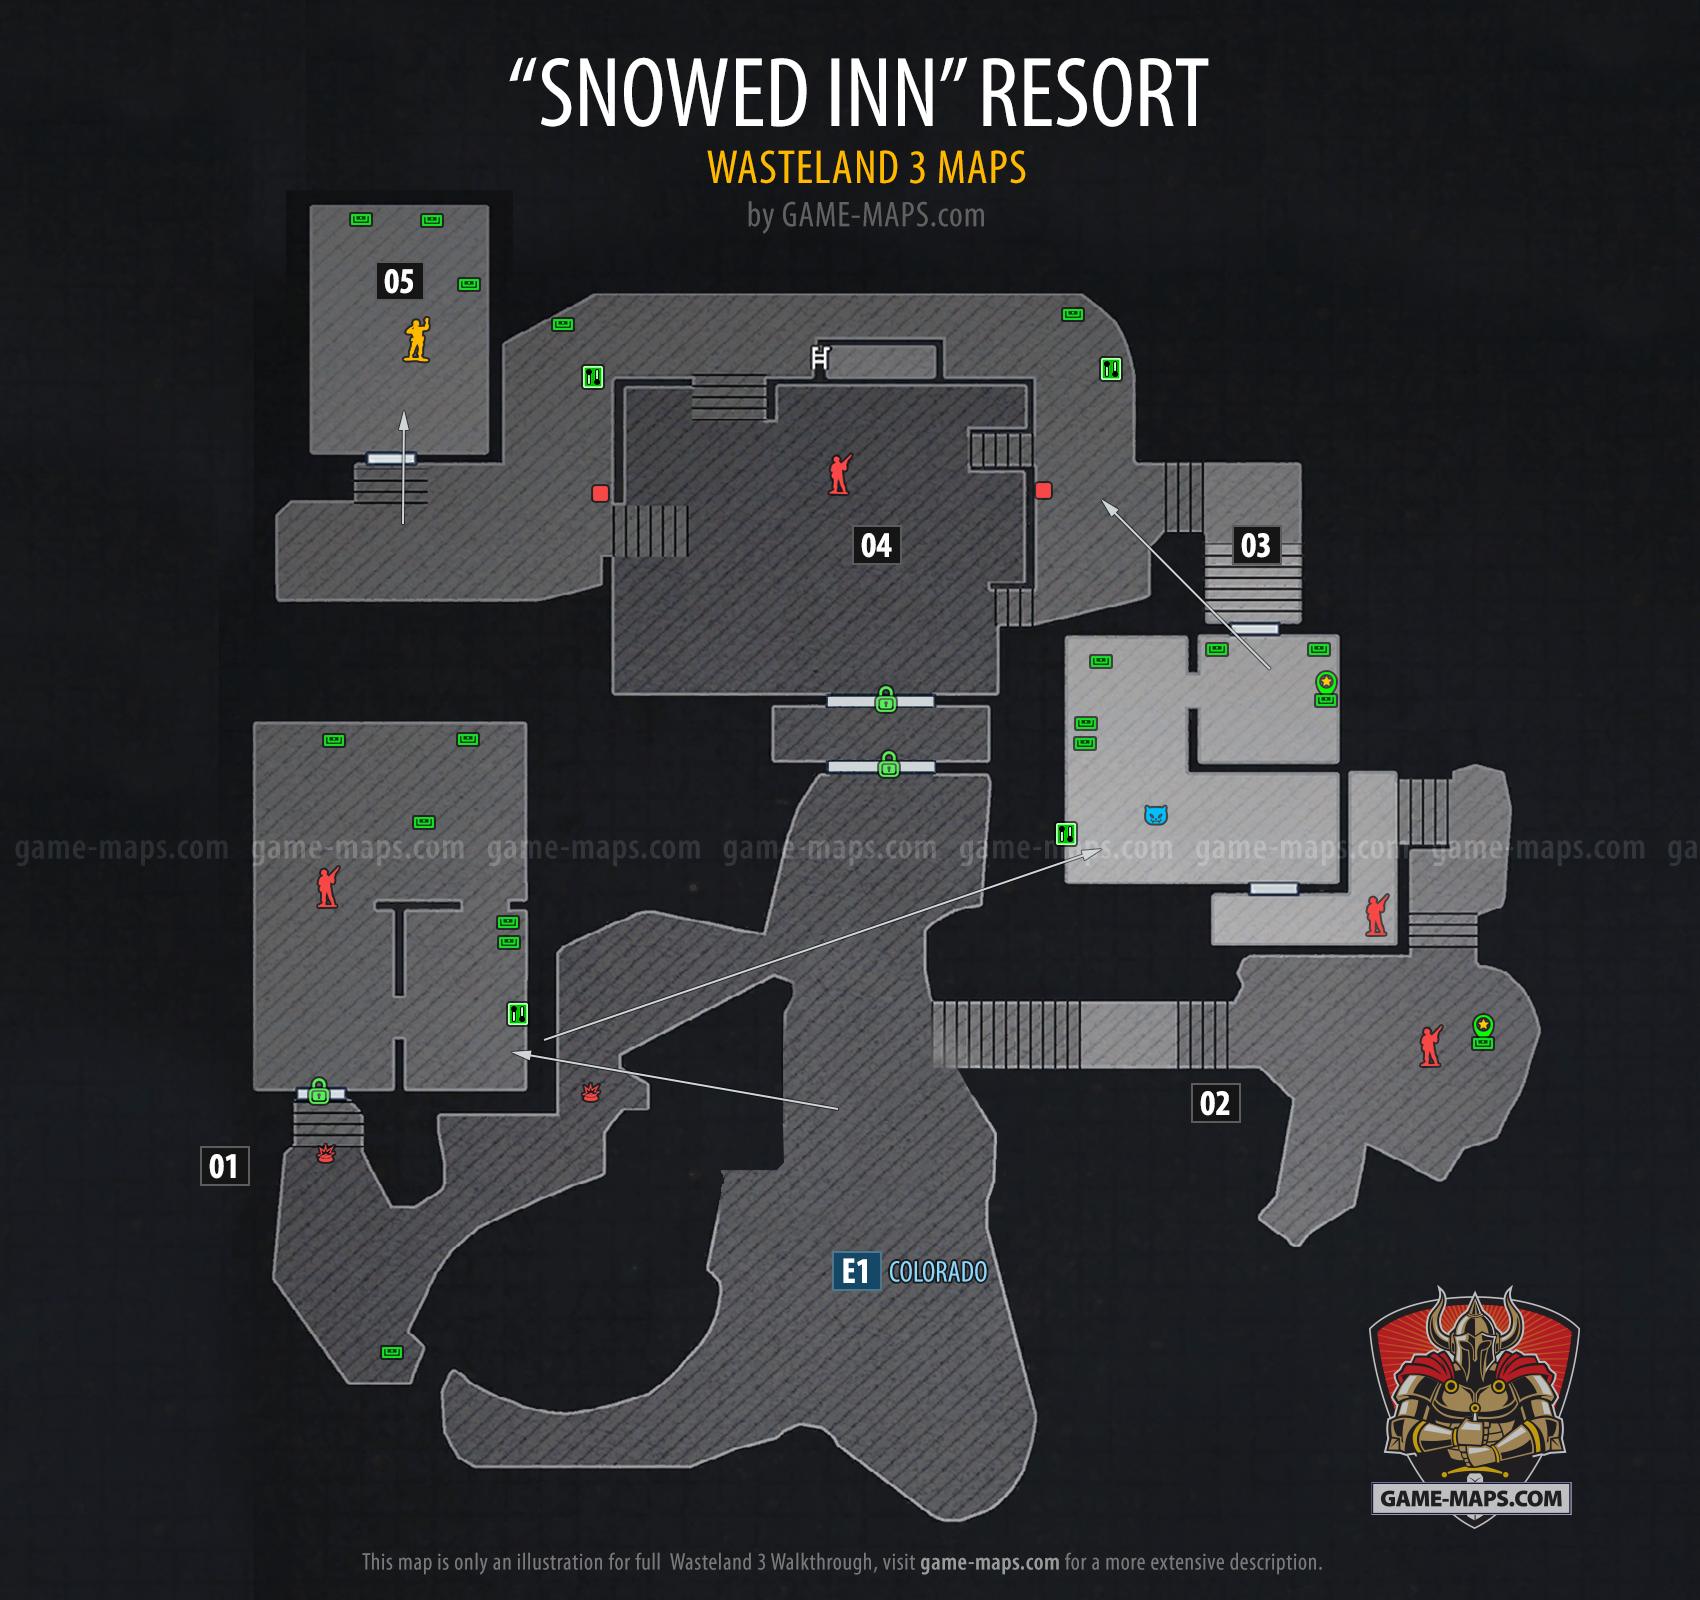 Snowed Inn Resort Map - Wasteland 3